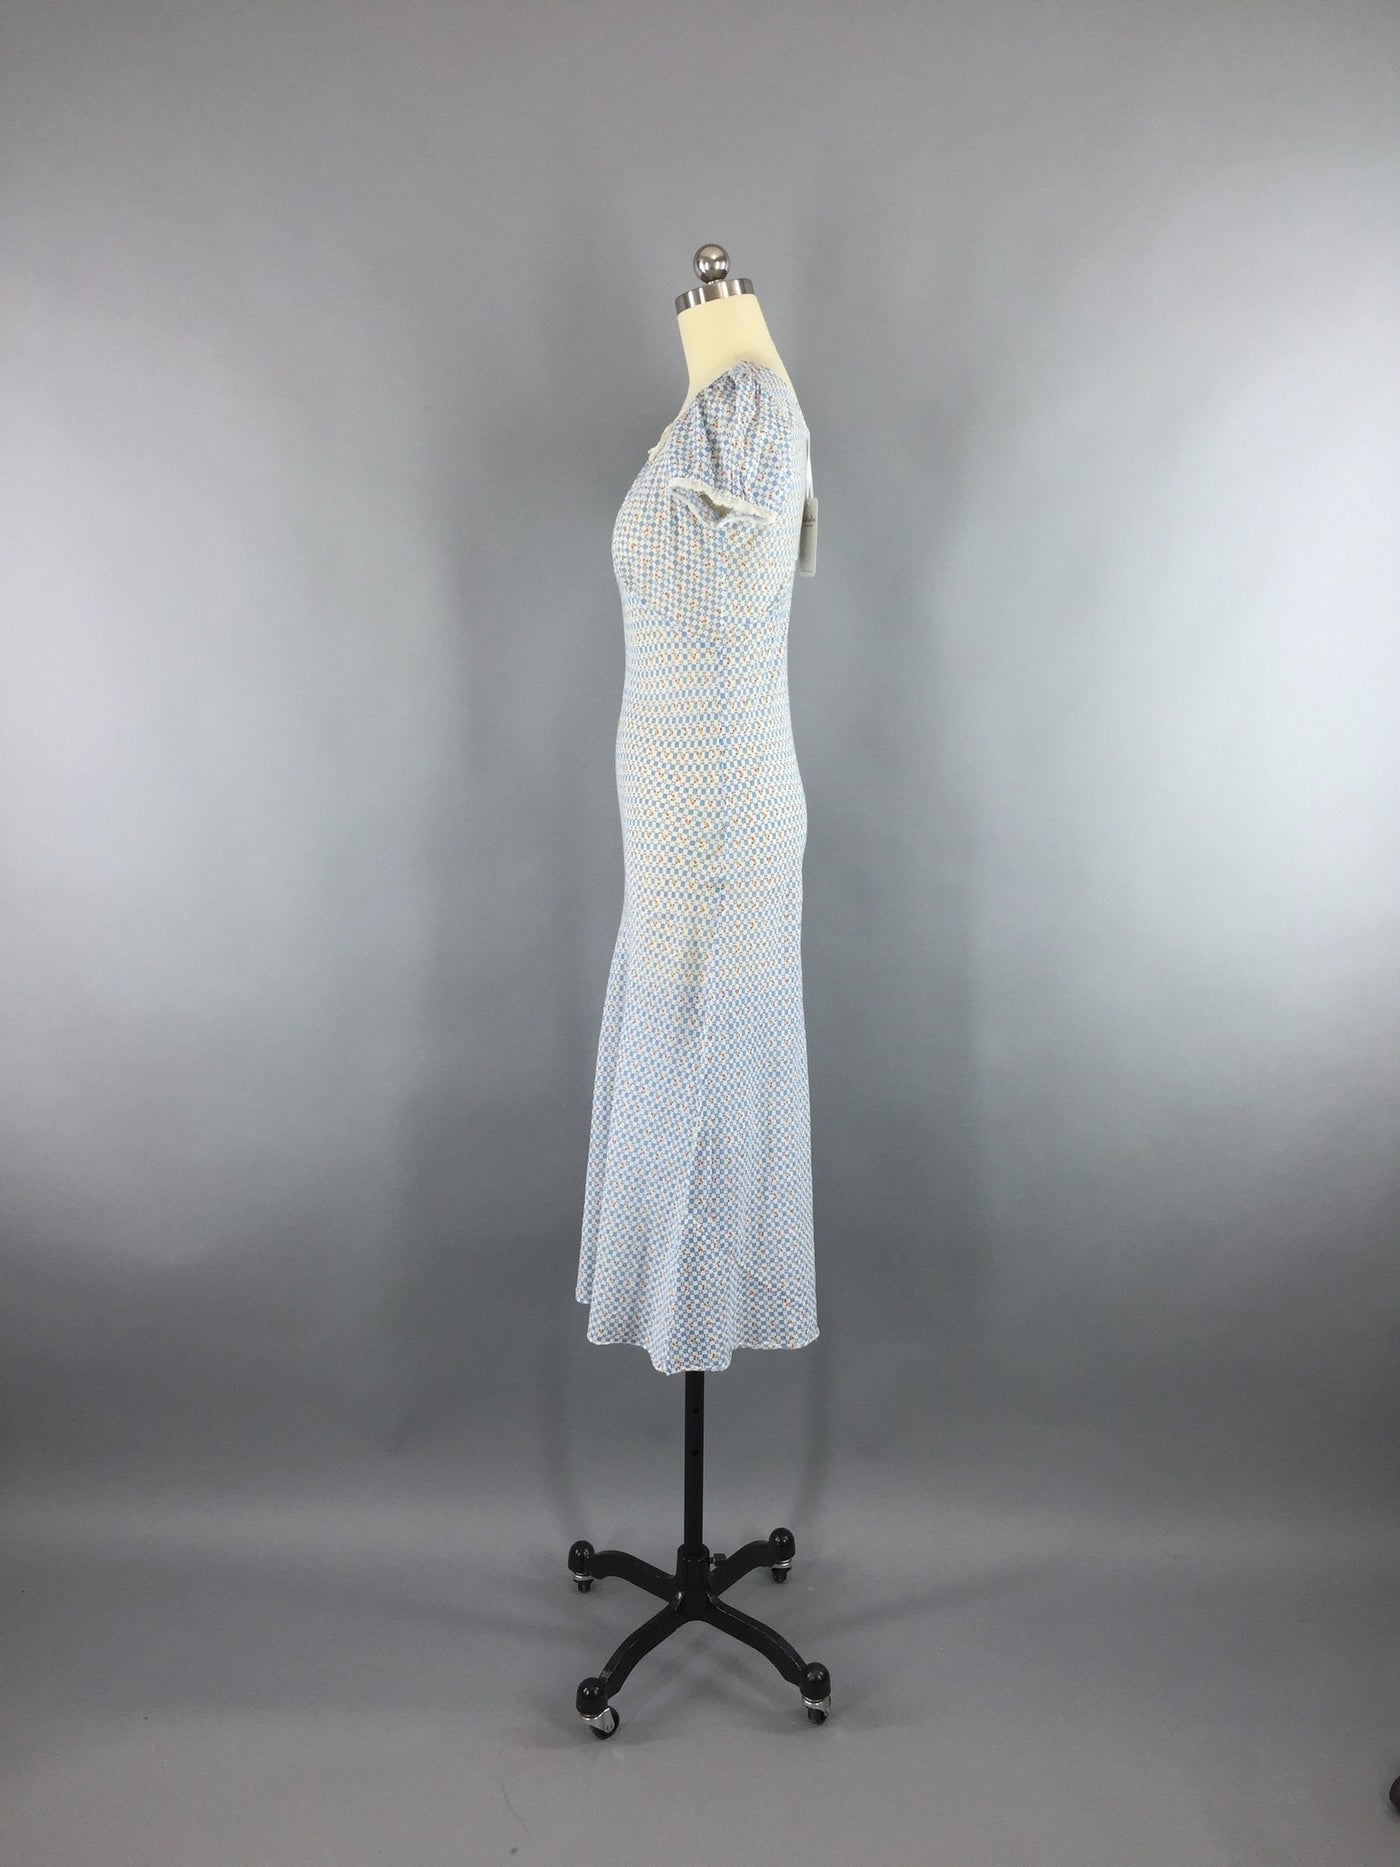 Vintage 1930s Dress / Bias Cut / House Dress Nightgown / Blue Floral P ...